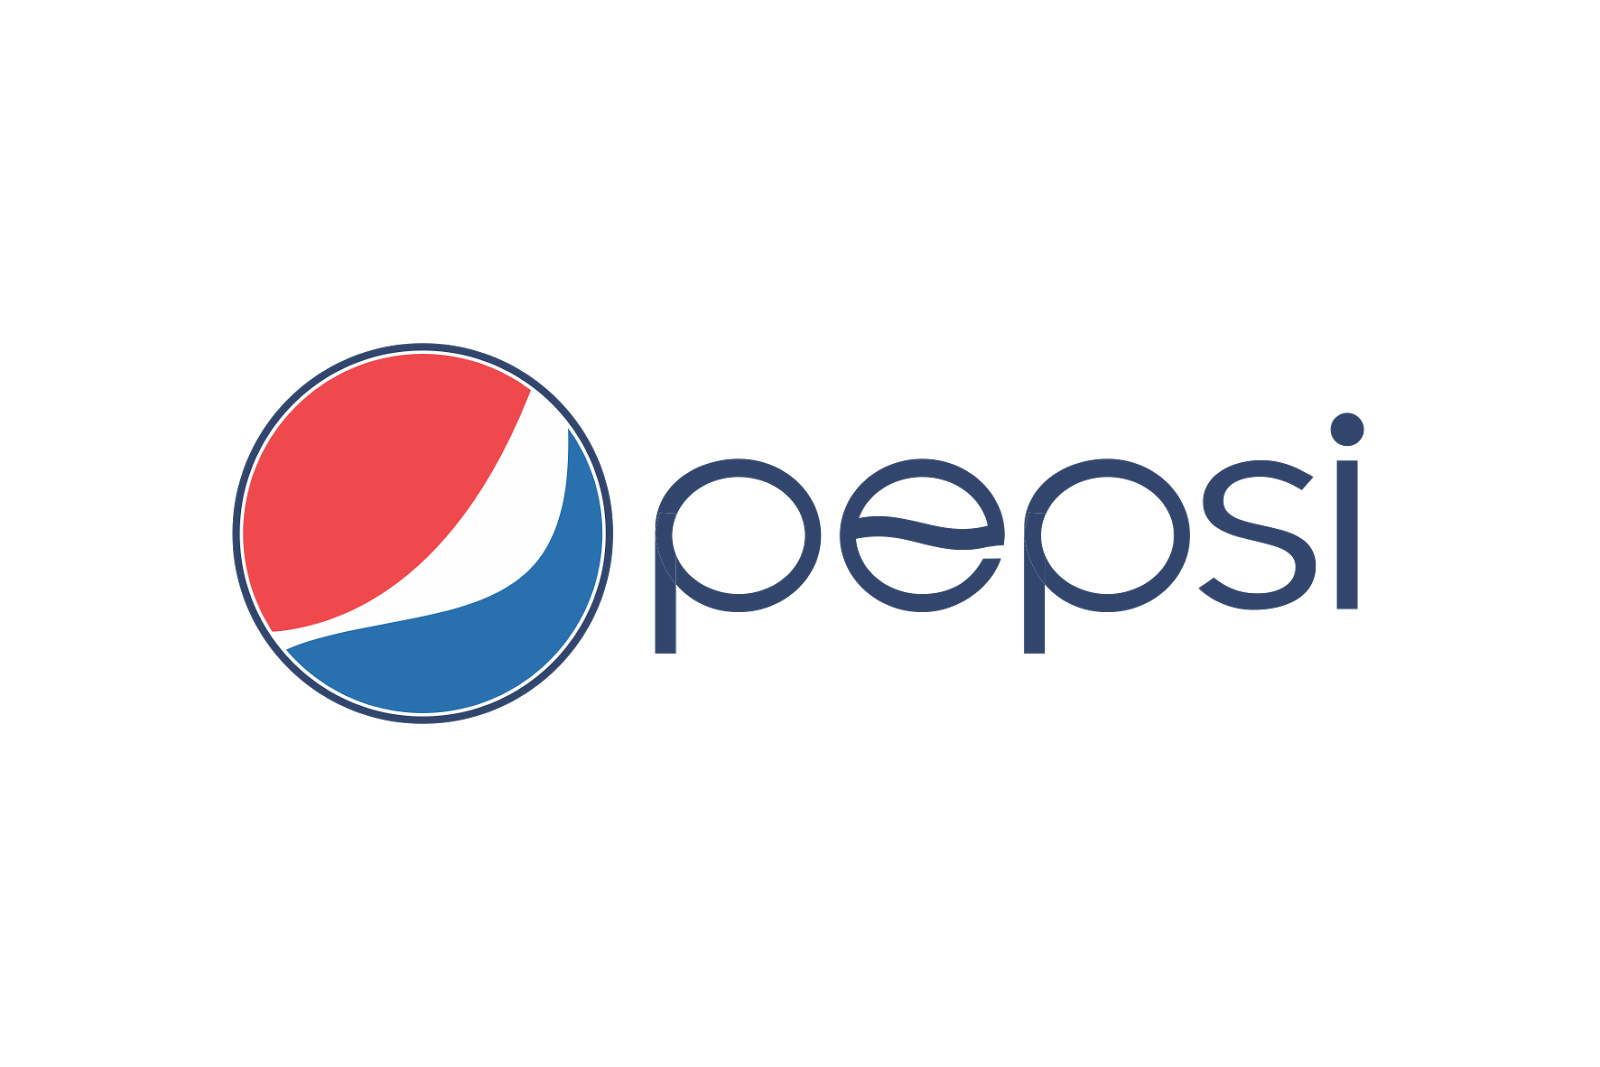 Pepsico Globe Coca-Cola Pepsi Free Transparent Image HQ Clipart